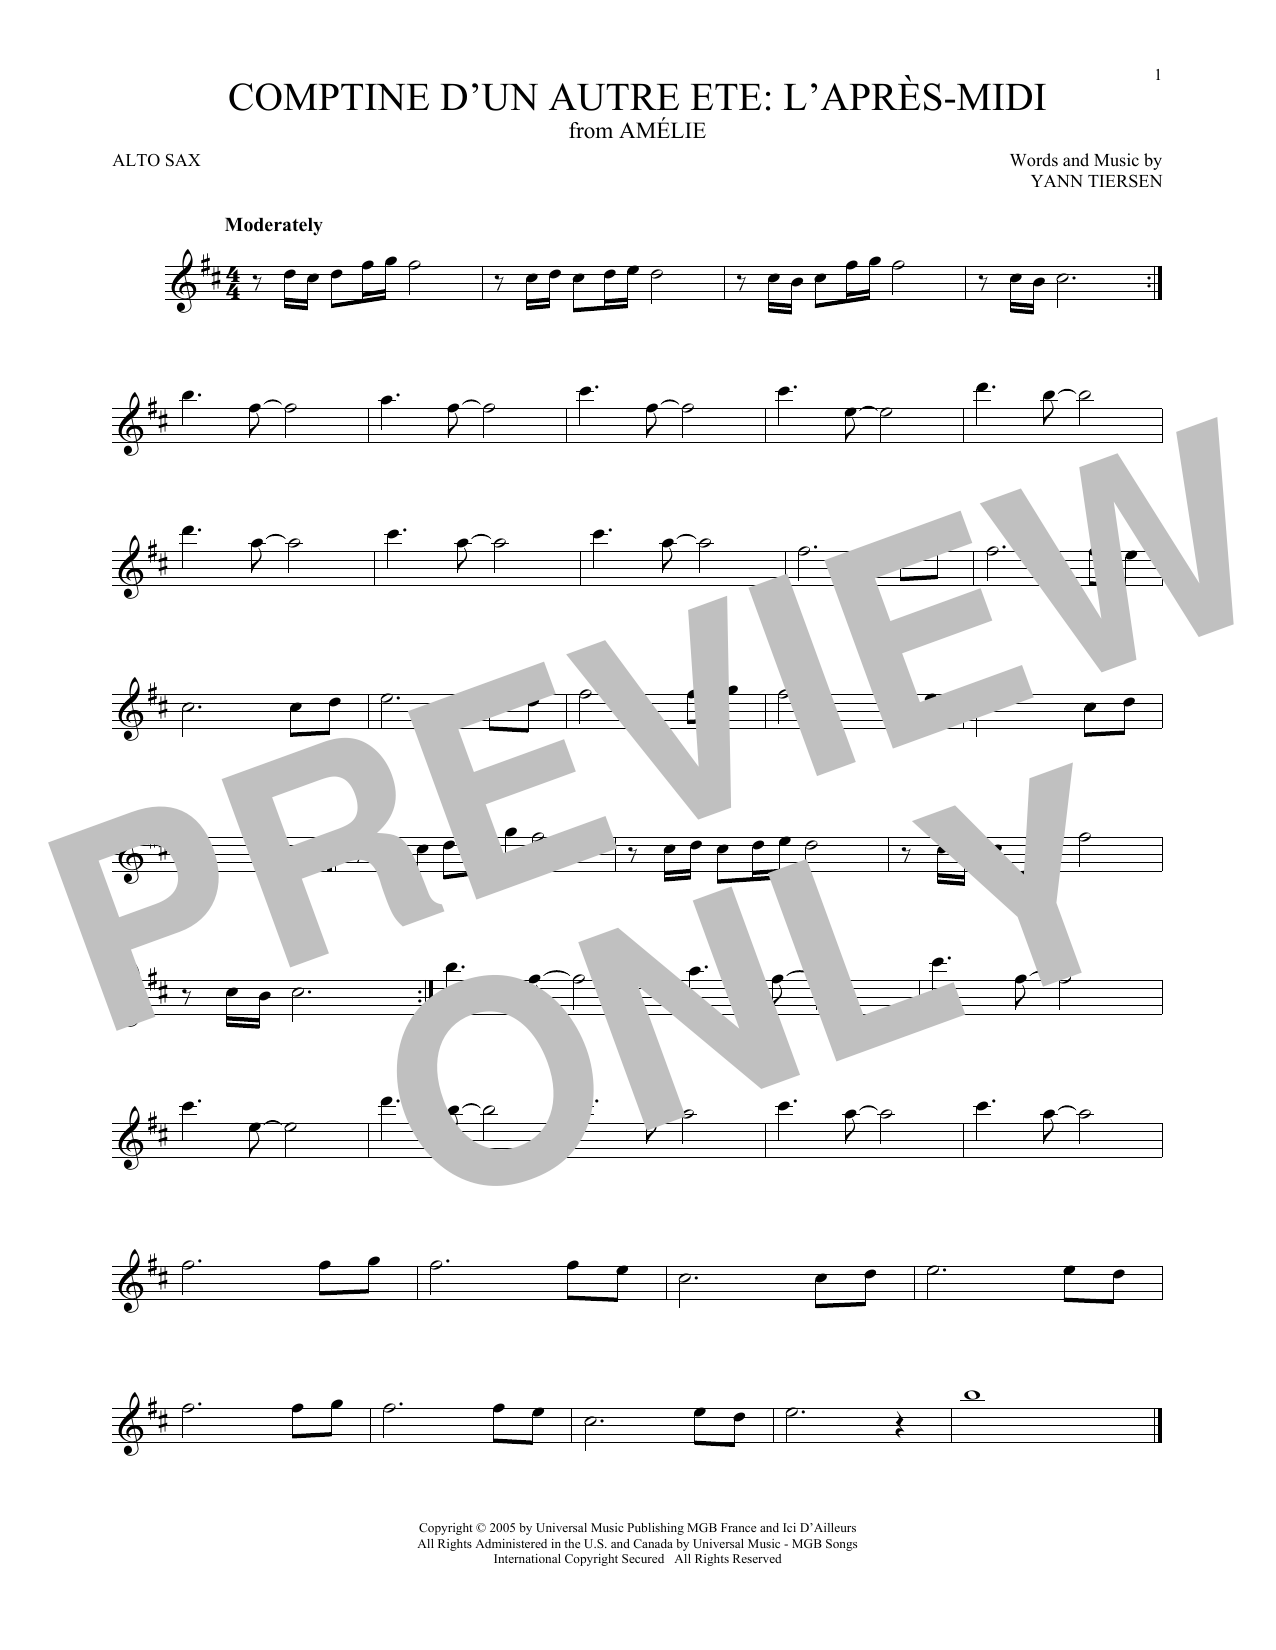 Download Yann Tiersen Comptine d'un autre été: L'après-midi (from Amelie) Sheet Music and learn how to play Alto Sax Solo PDF digital score in minutes